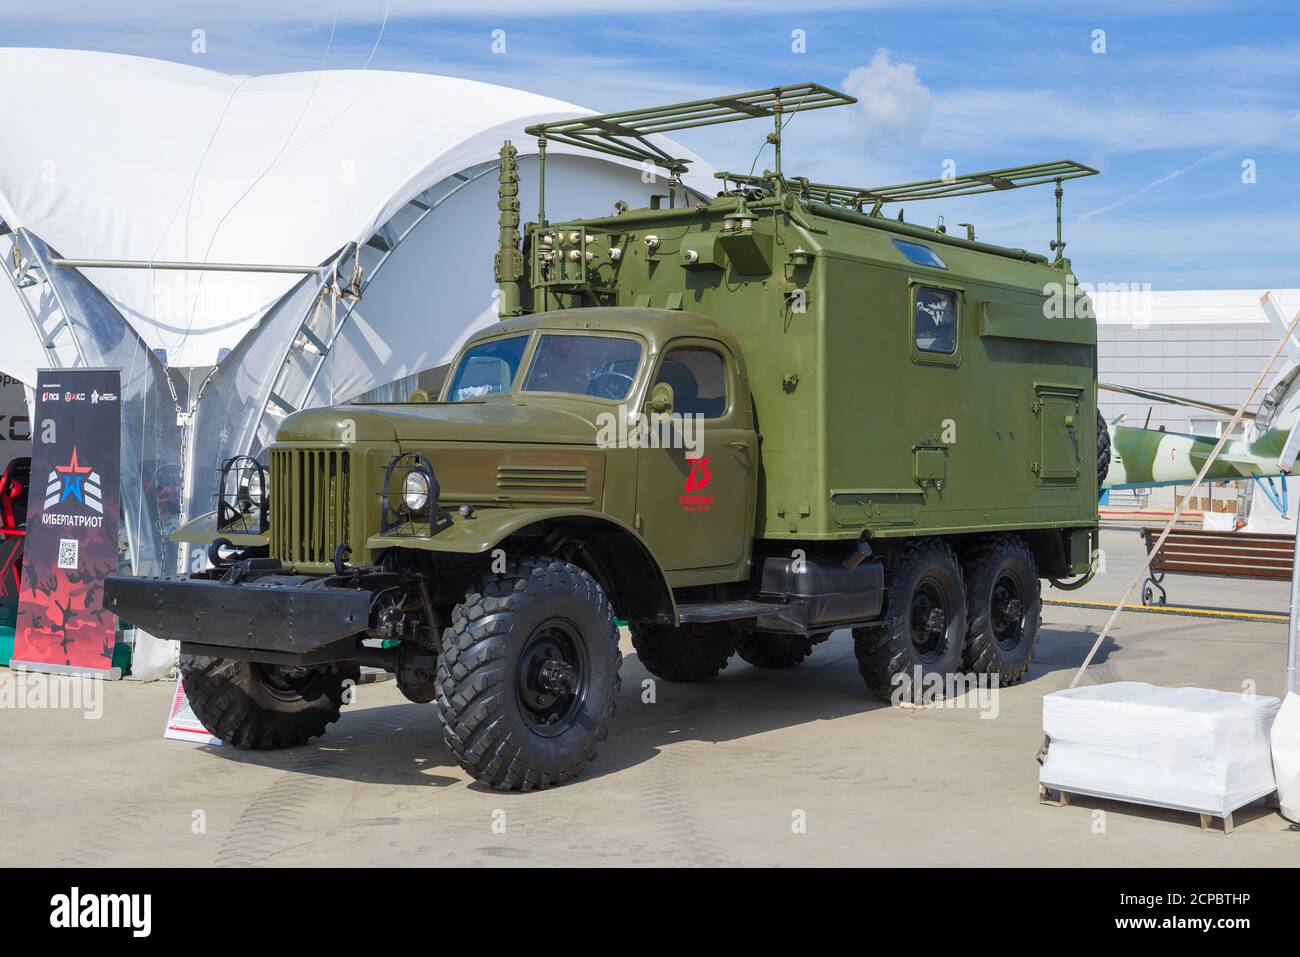 REGIÓN DE MOSCÚ, RUSIA - 25 DE AGOSTO de 2020: Estación de radio de coche del ejército R-140 basado en el camión retro soviético ZIL-157 en el foro militar internacional 'brazo Foto de stock